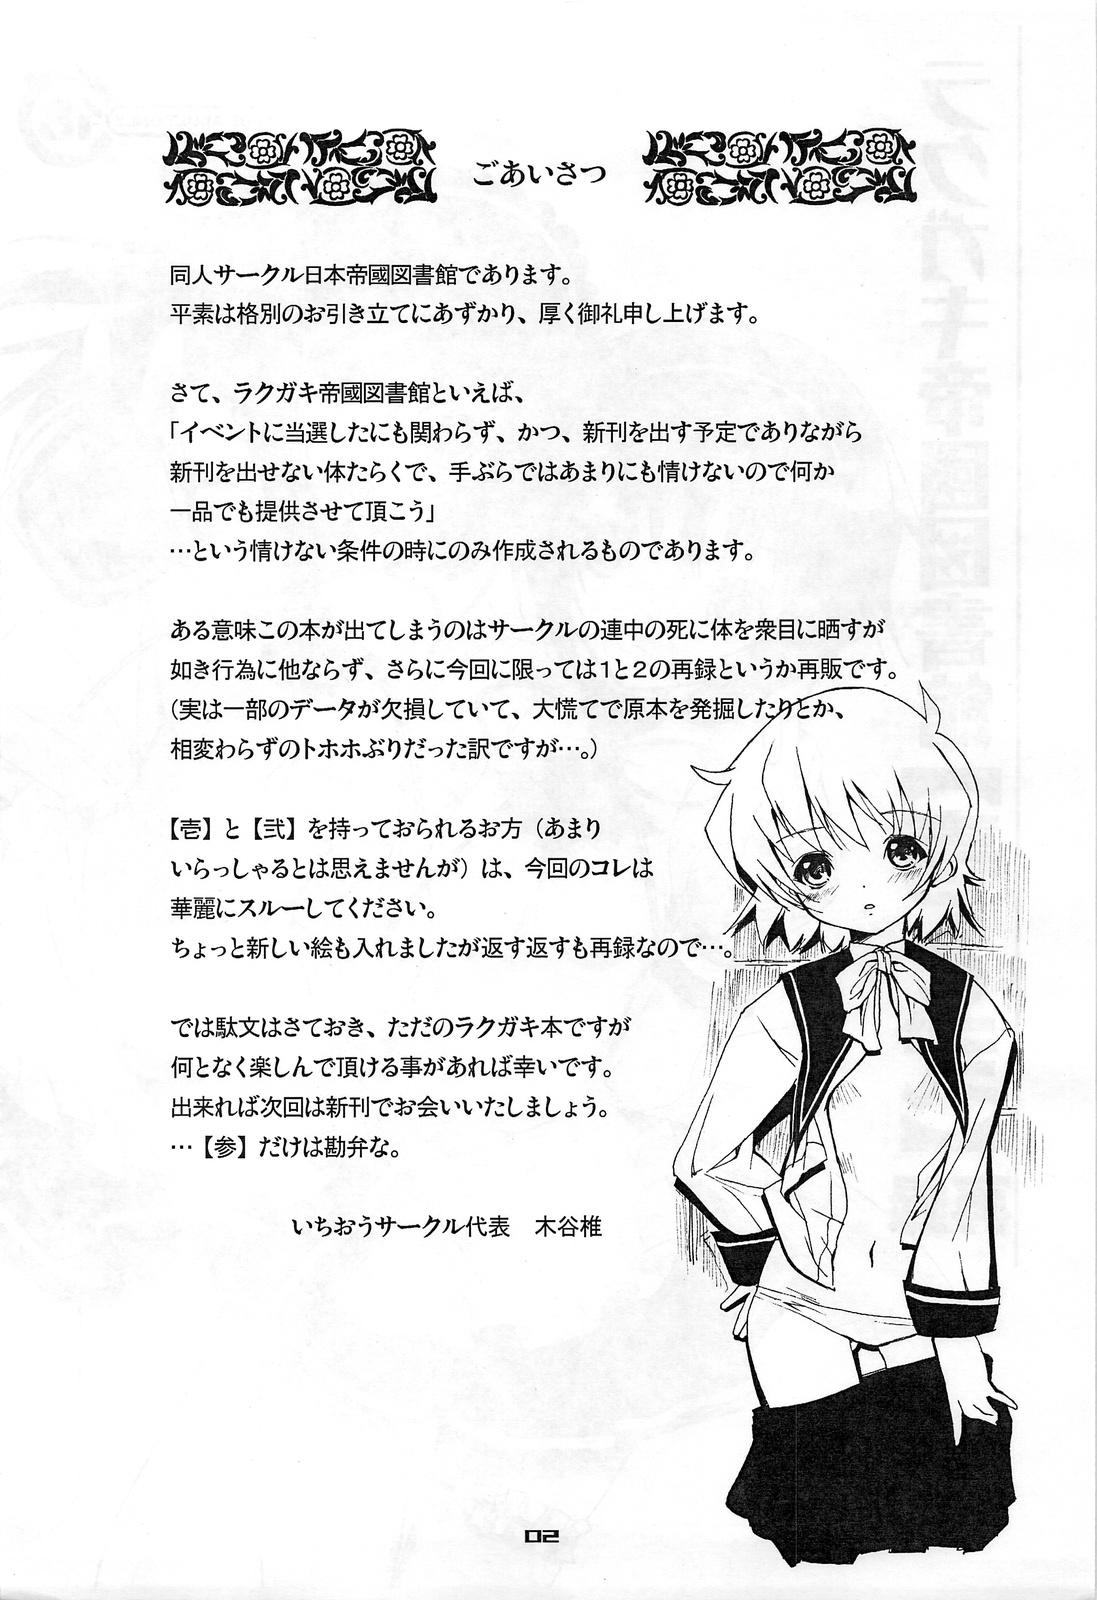 Asslicking Rakugaki Teikoku Toshokan "Ichi to Ni" Sairoku Police - Page 2